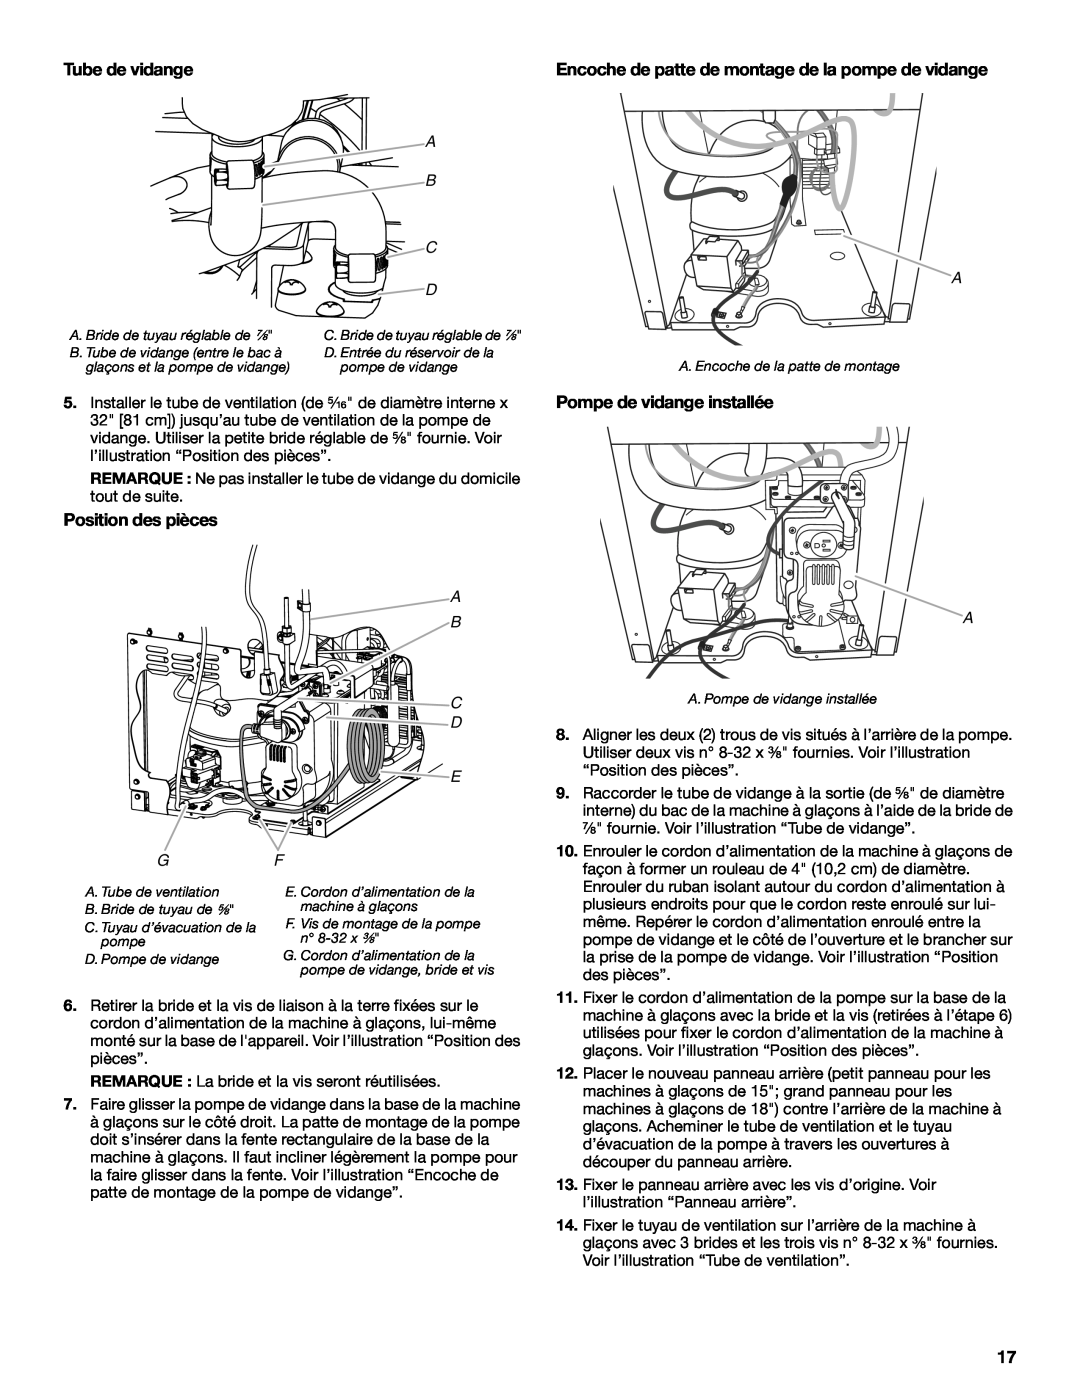 Whirlpool W10541636B important safety instructions Tube de vidange, Pompe de vidange installée, Position des pièces 